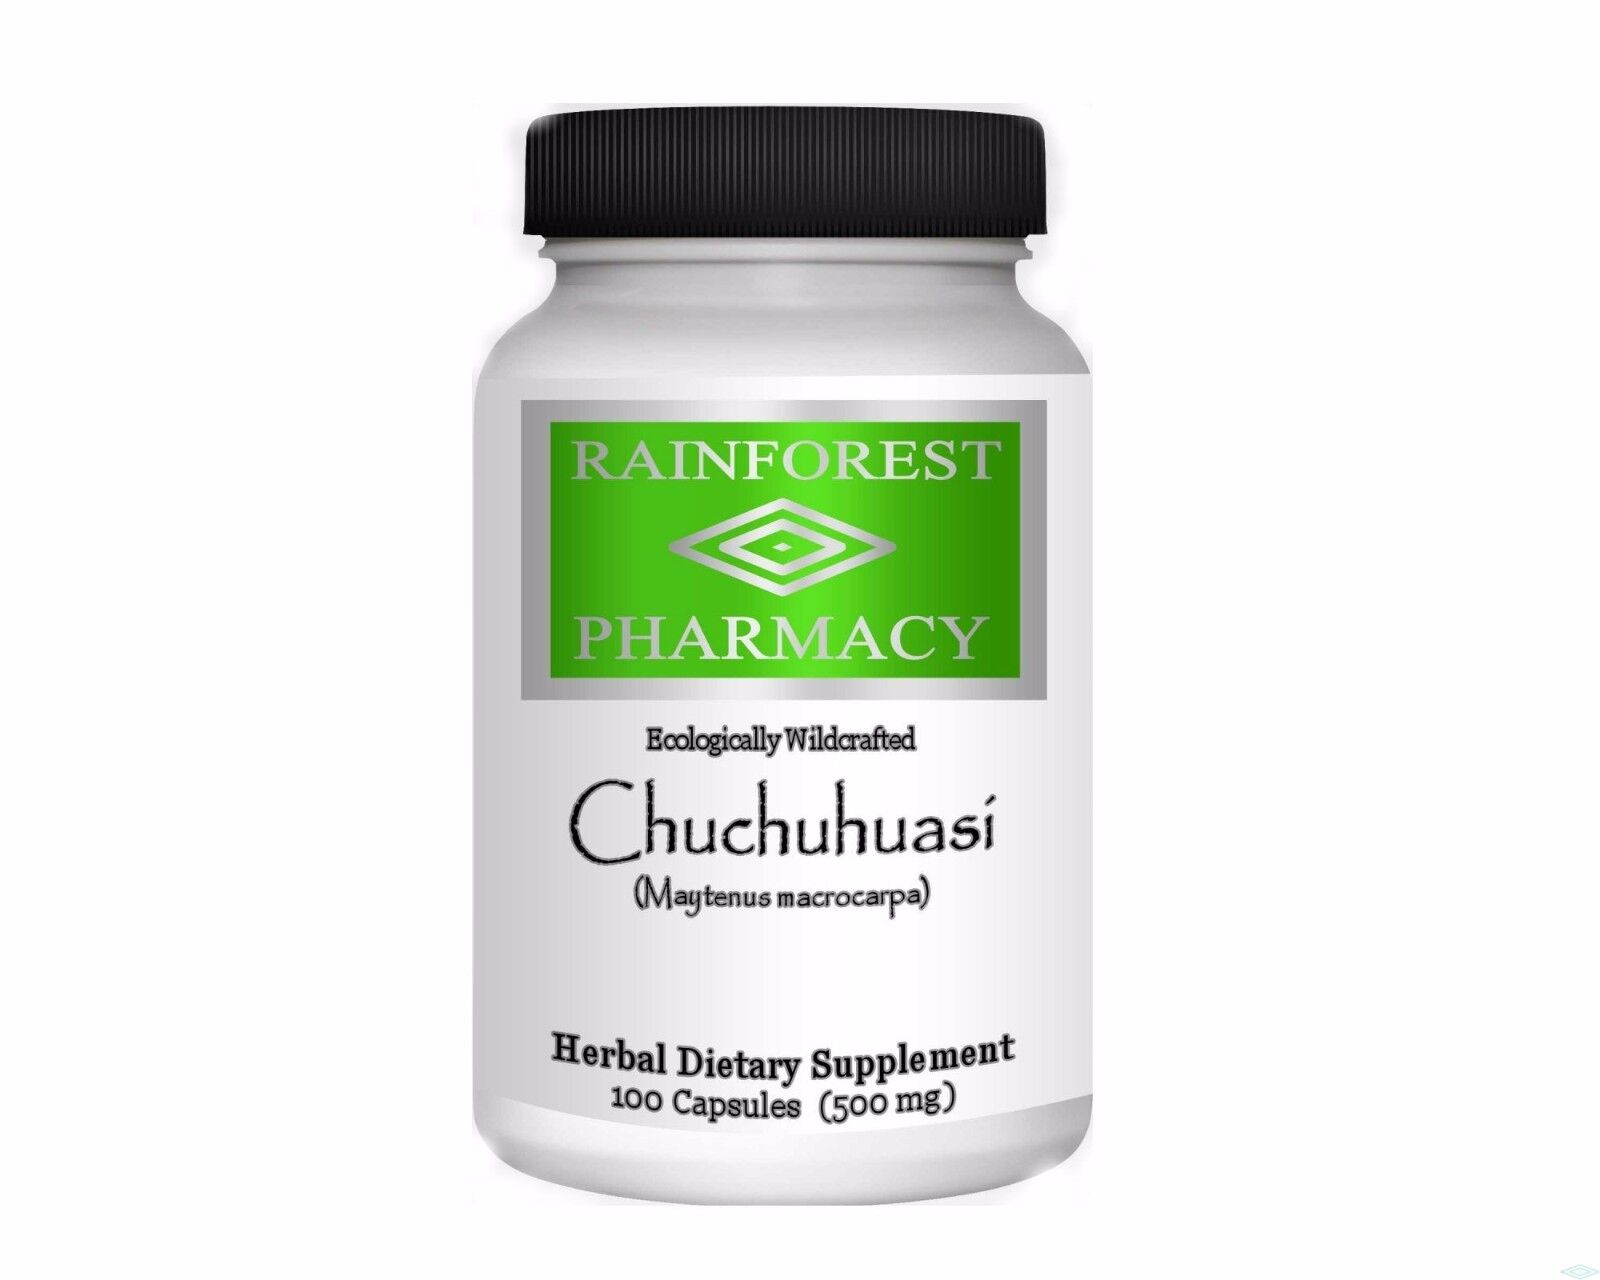 Benefits of Chuchuhuasi Supplements